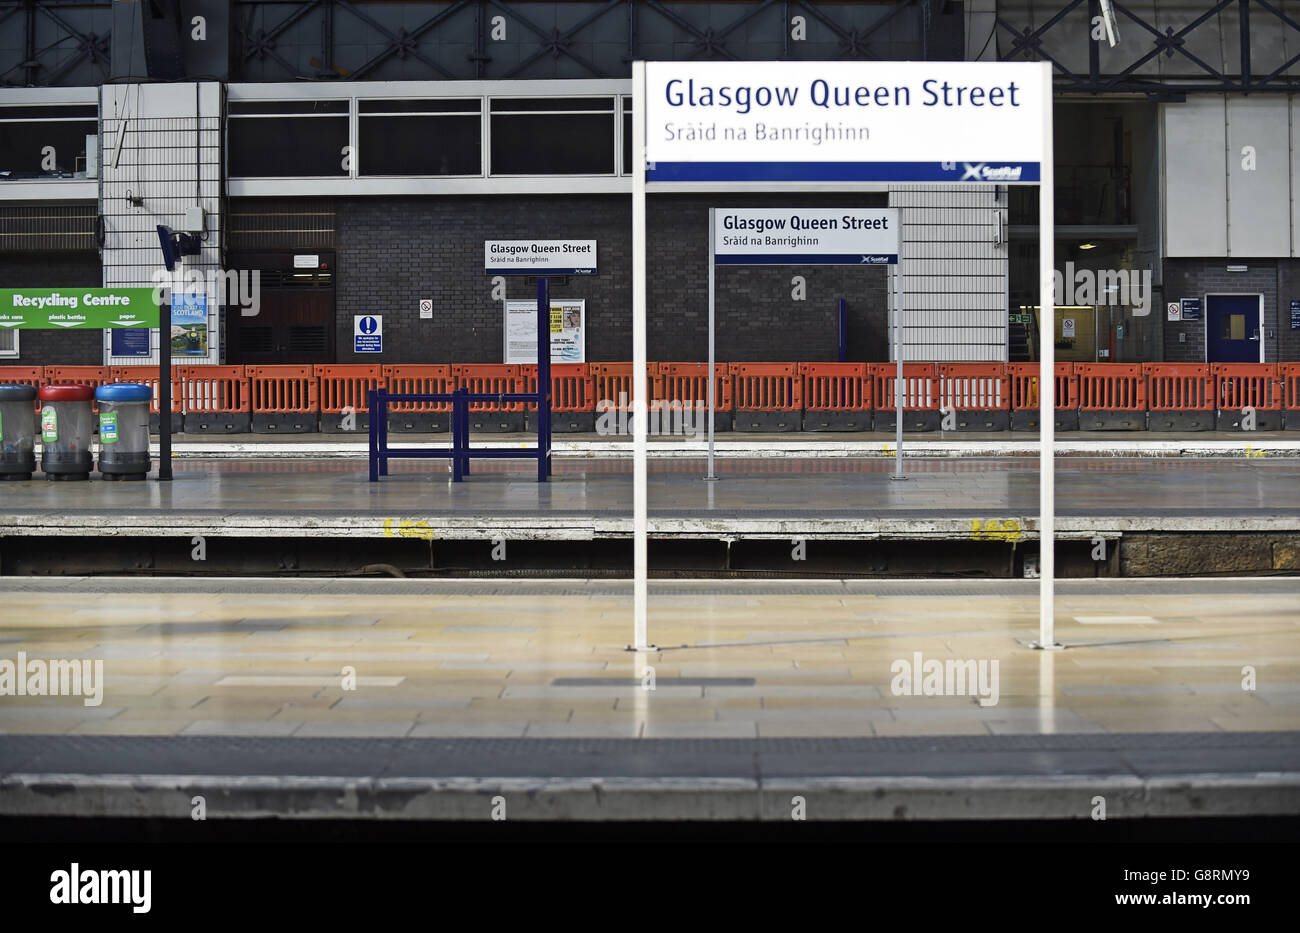 Lavori di ingegneria presso la Queen Street Station di Glasgow, in quanto si consiglia ai pendolari ferroviari di pianificare i loro viaggi e di prevedere tempi di viaggio più lunghi quando il principale tunnel ferroviario è in corso di ristrutturazione. Foto Stock